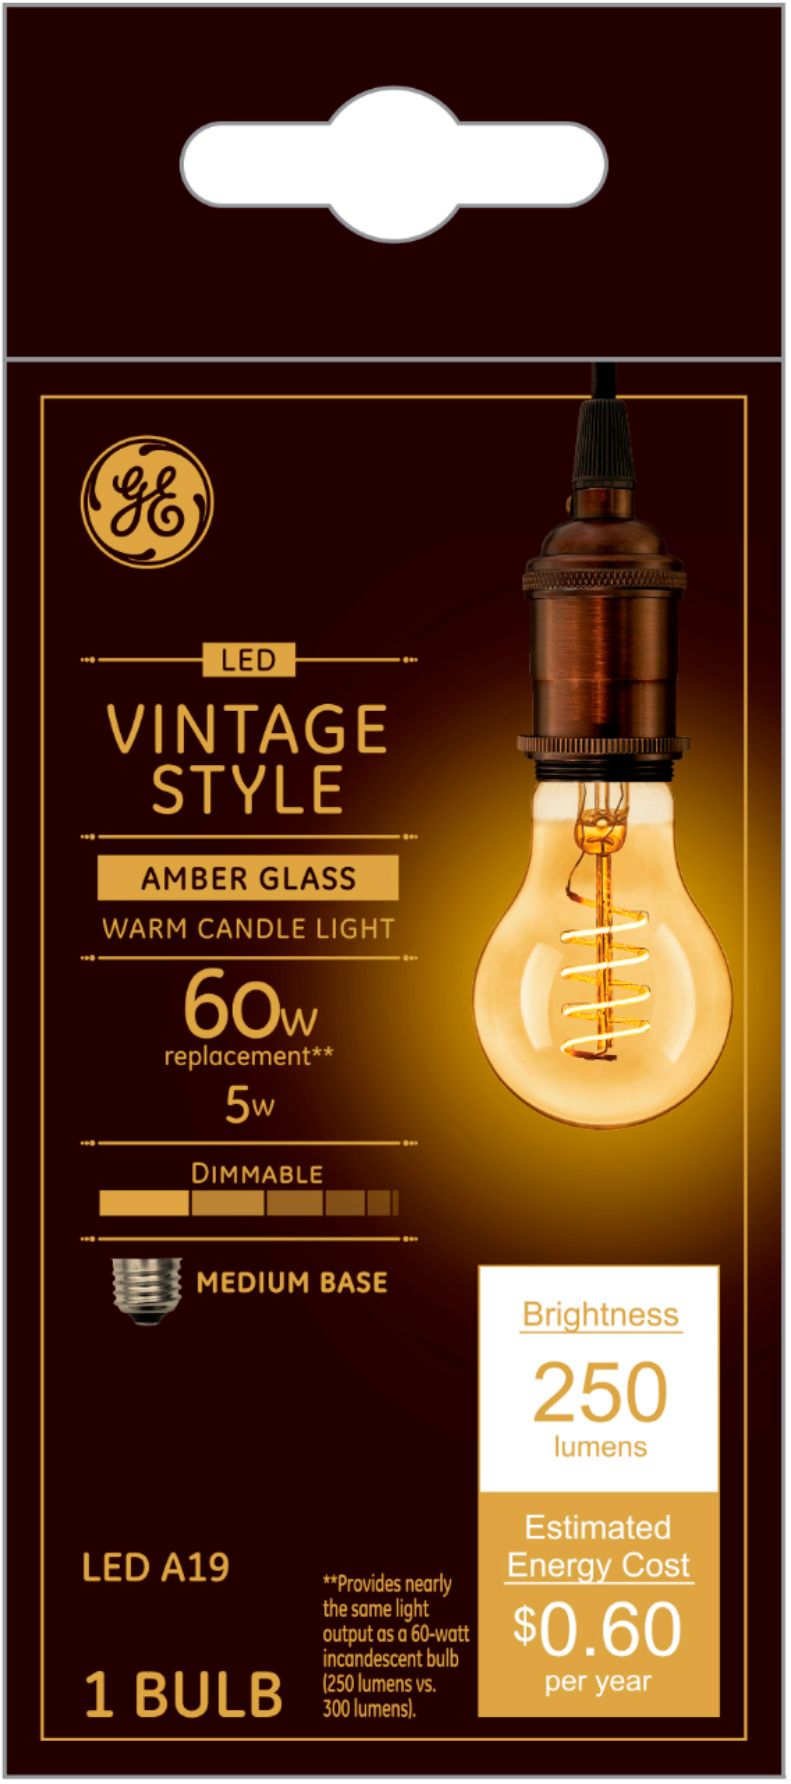 genvinde Erkende Lærd GE Vintage 250-Lumen, 5W Dimmable A19 LED Light Bulb, 60W Equivalent Amber  36505 - Best Buy